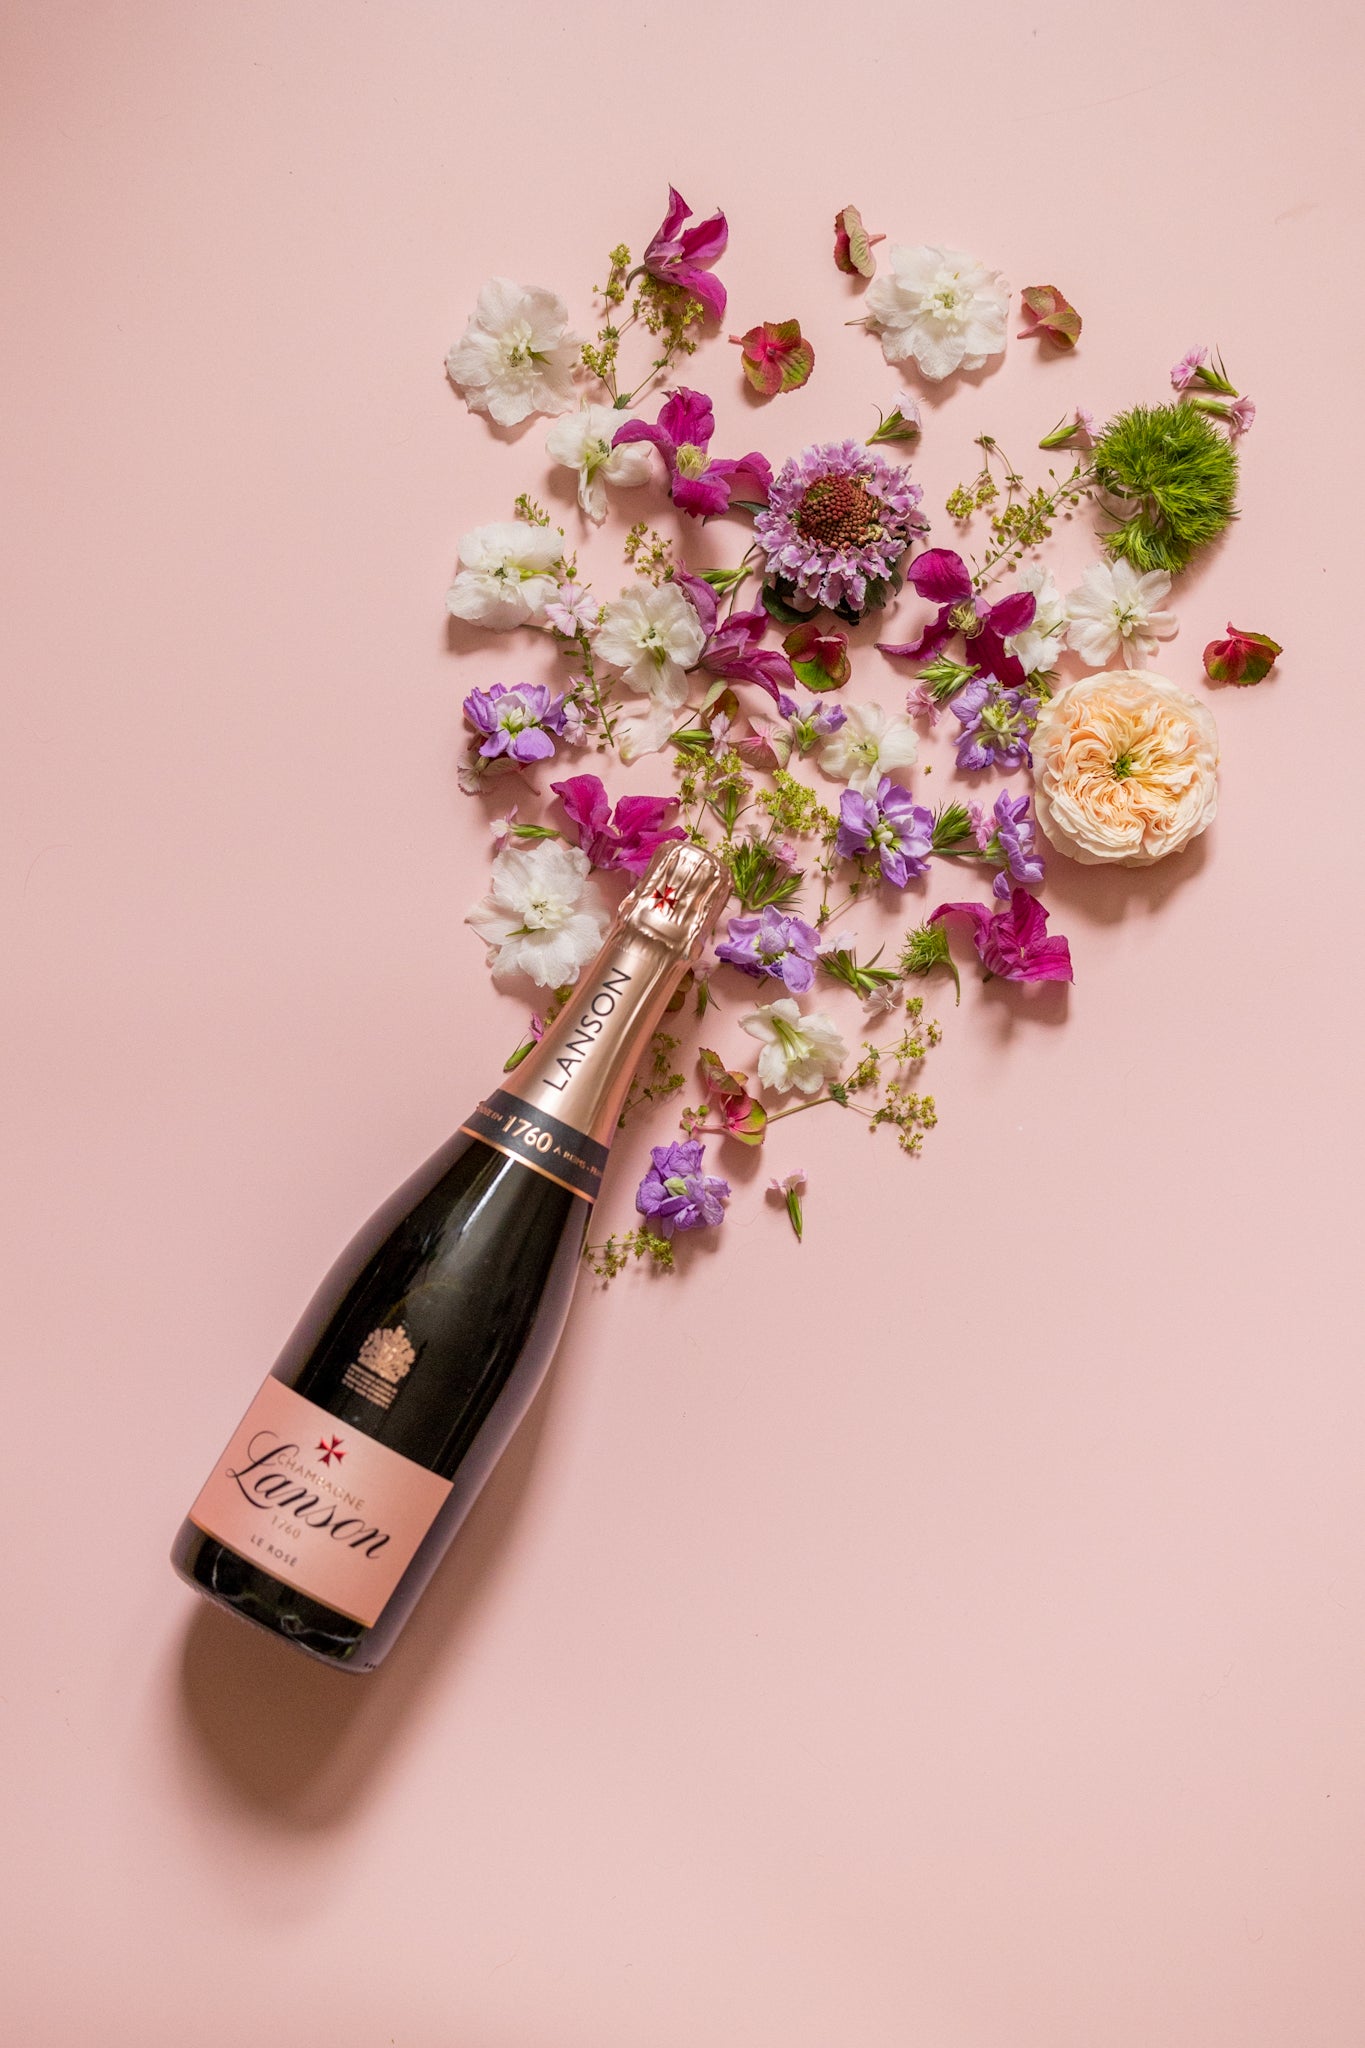 Lanson Le Rosé Champagne